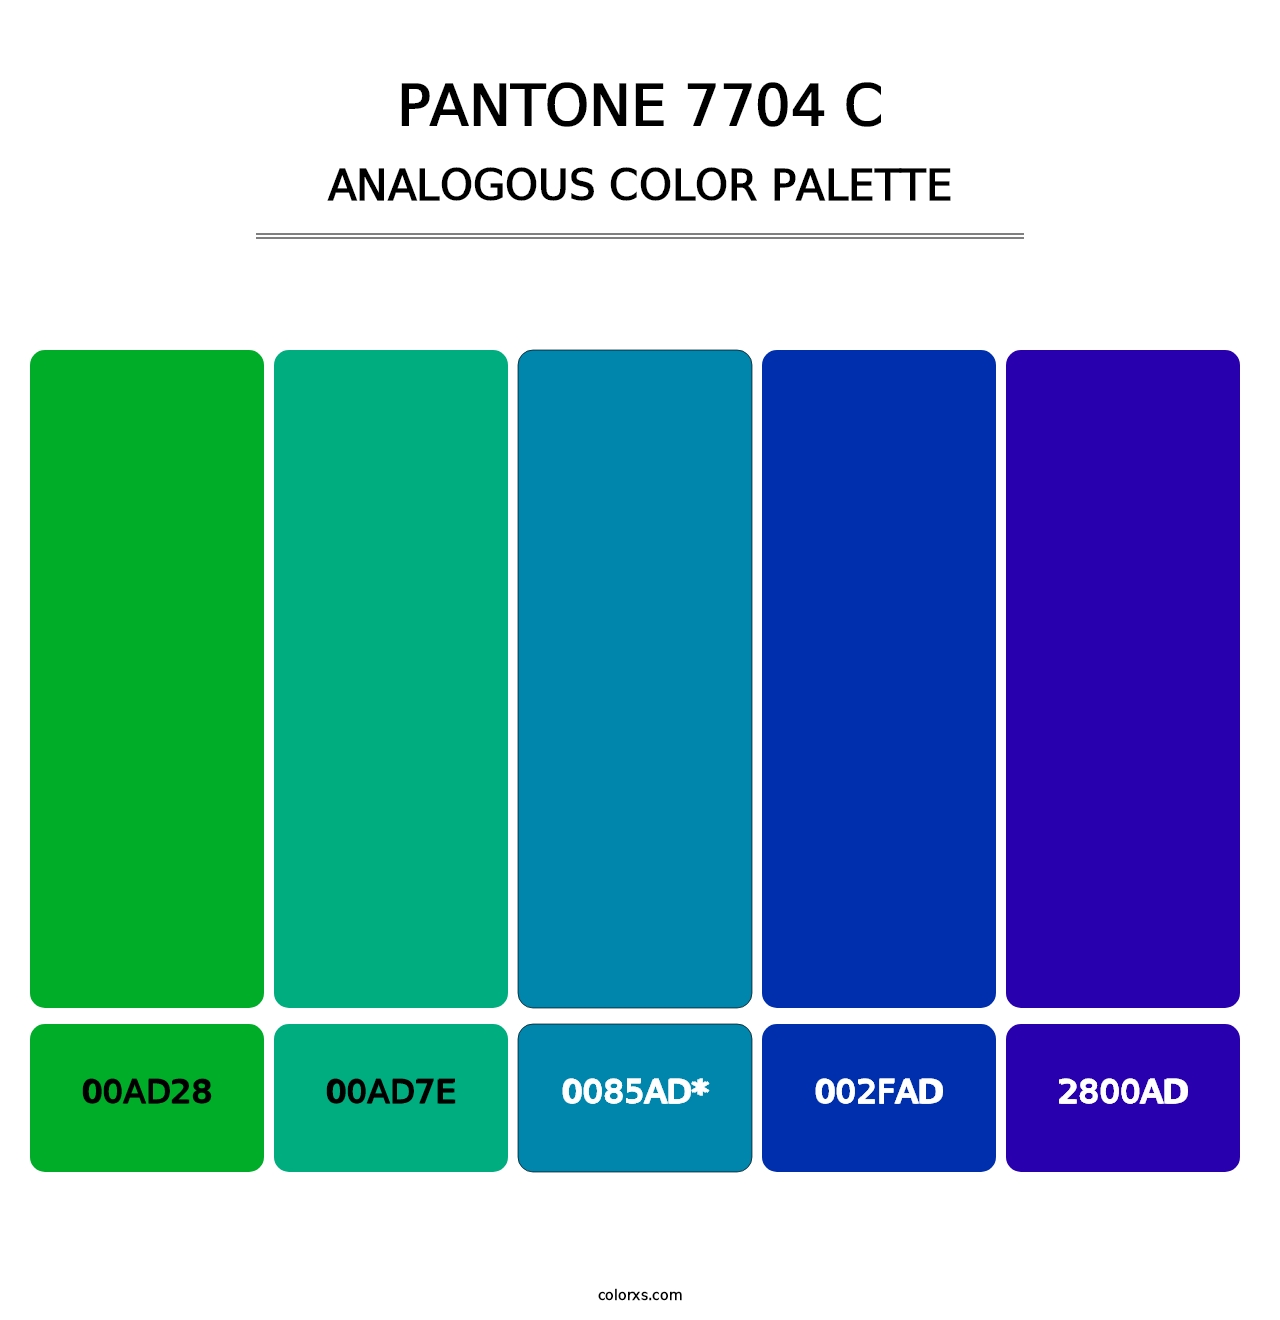 PANTONE 7704 C - Analogous Color Palette